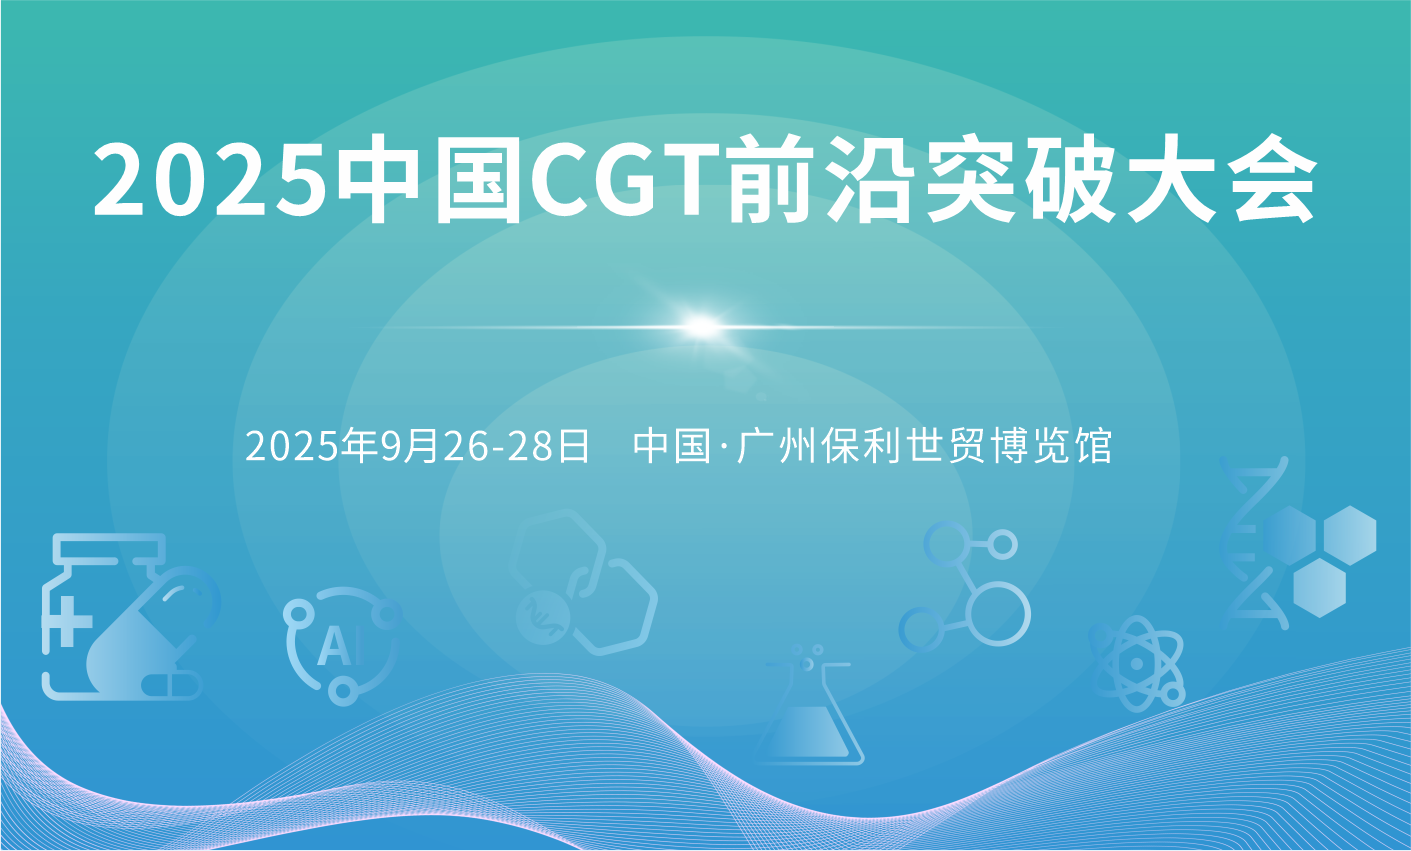 2025中国CGT前沿突破大会